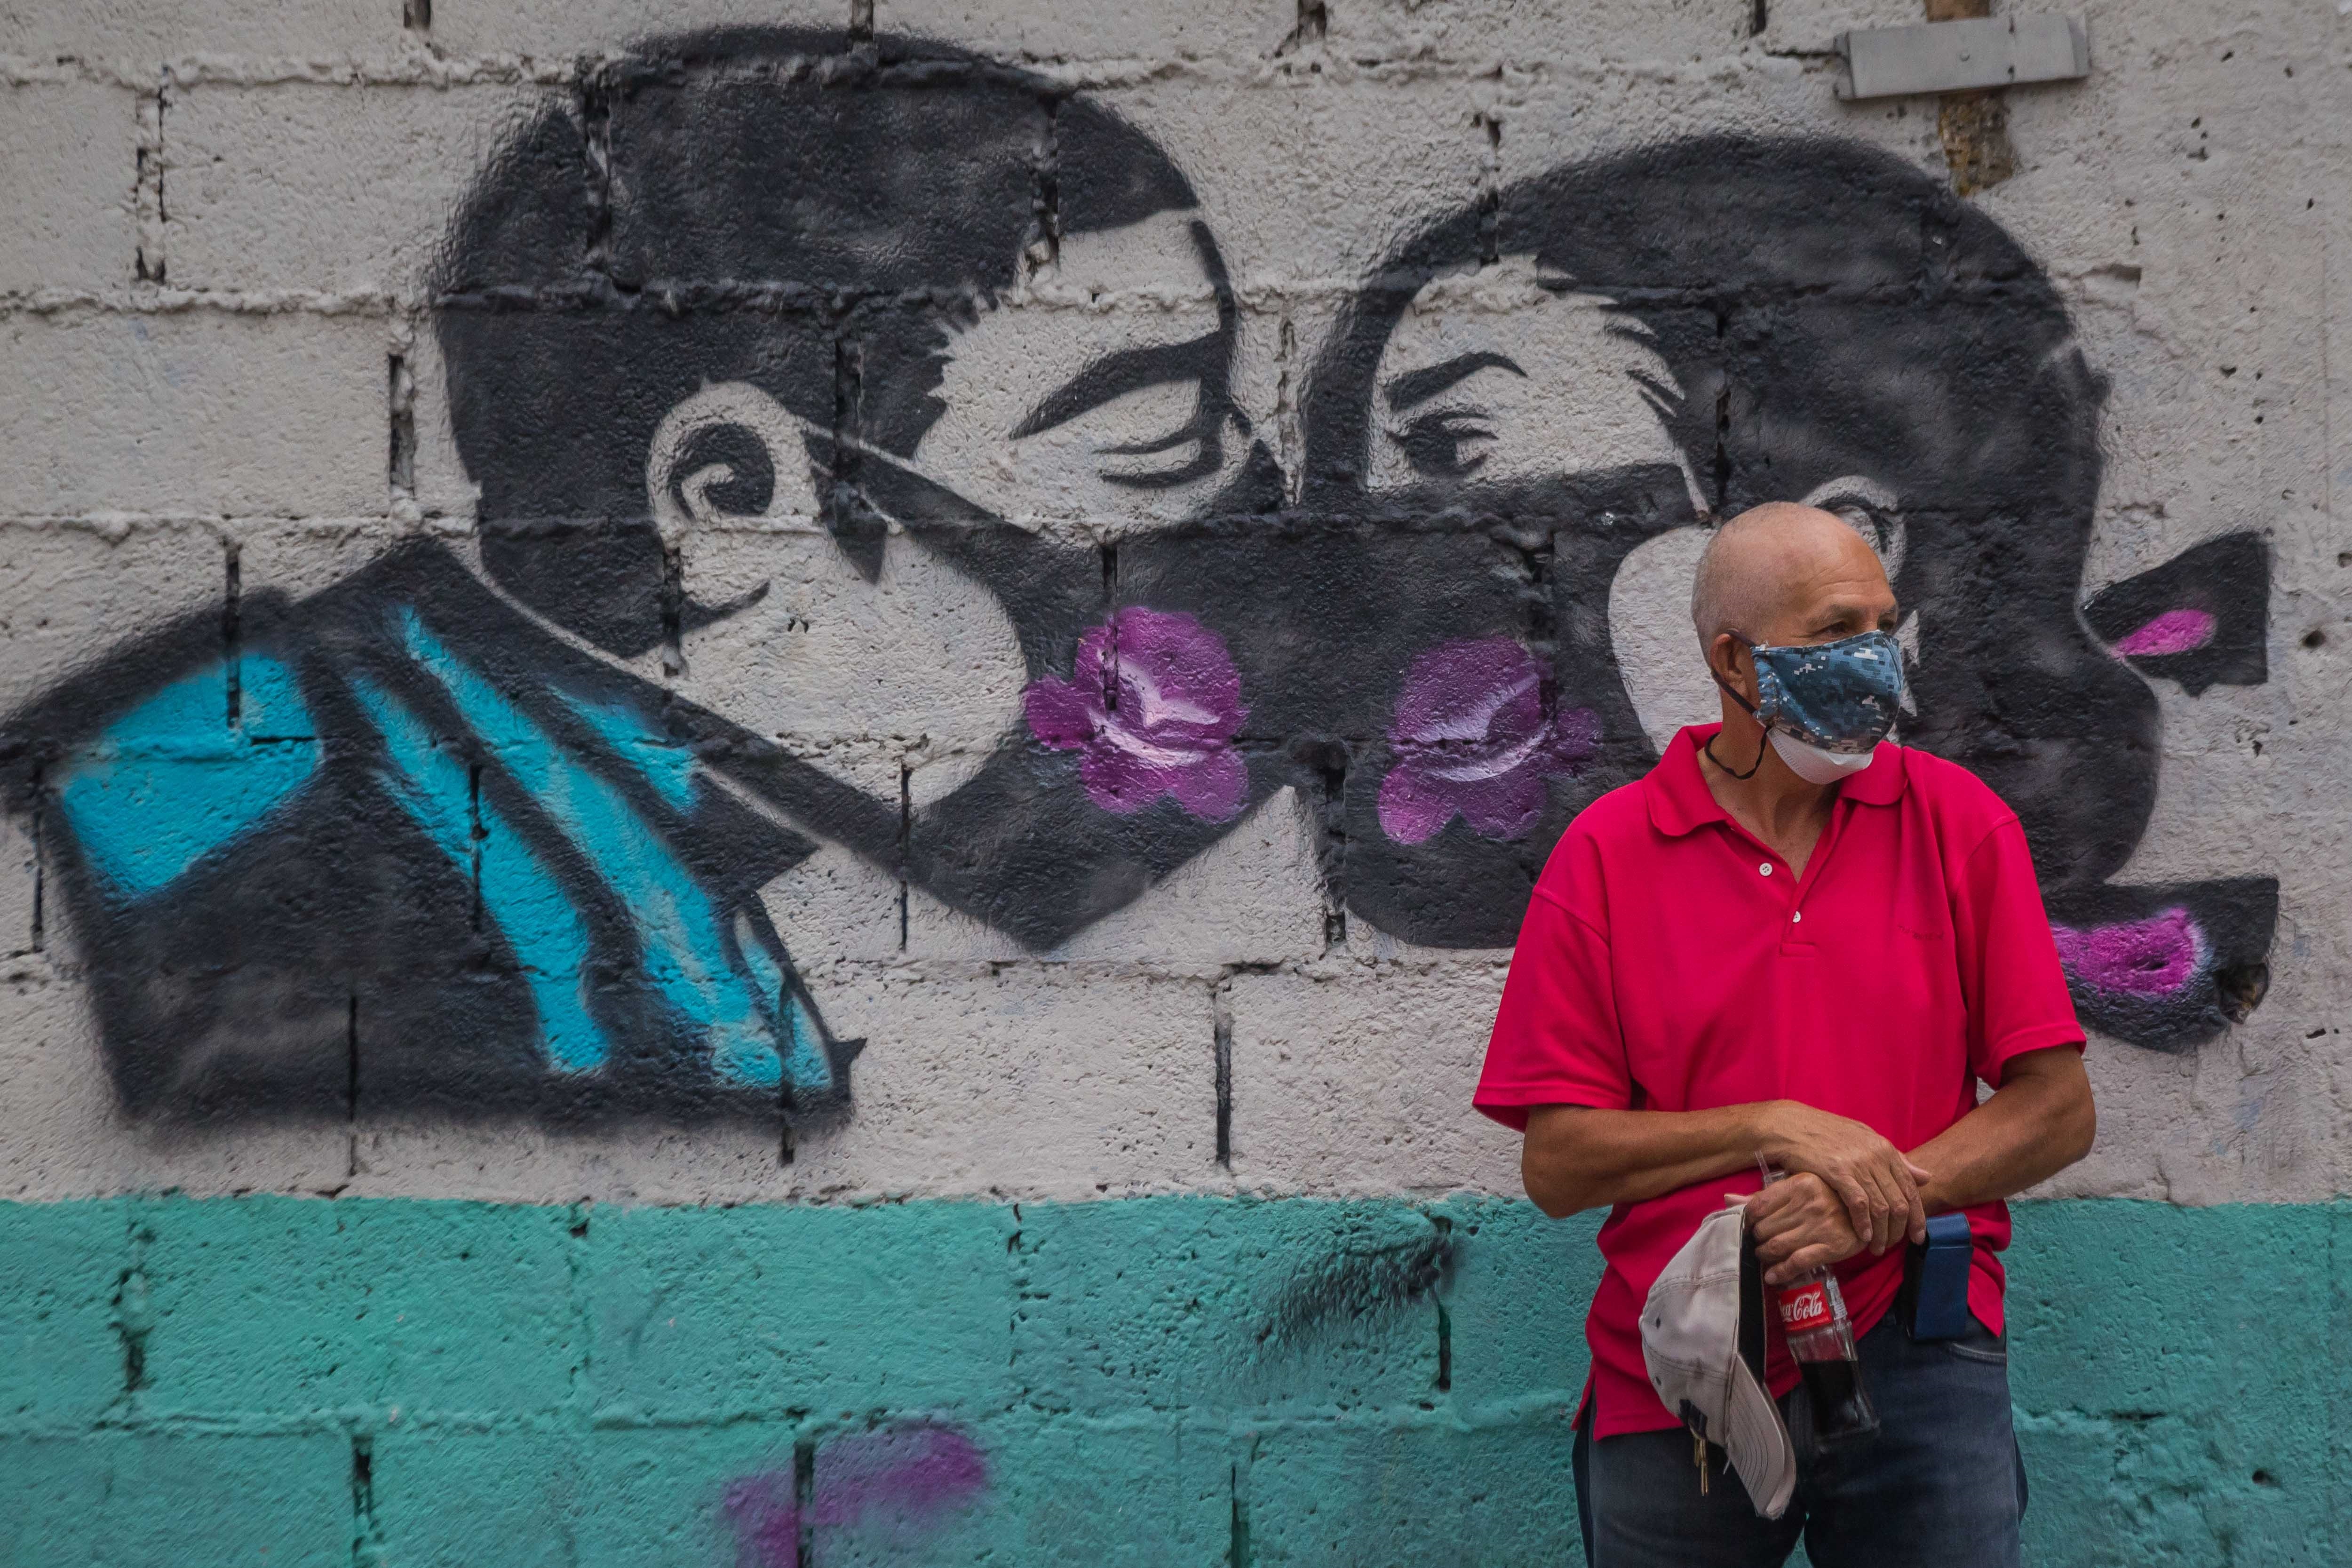 Venezuela sumó 15 nuevas muertes por coronavirus, según el balance chavista